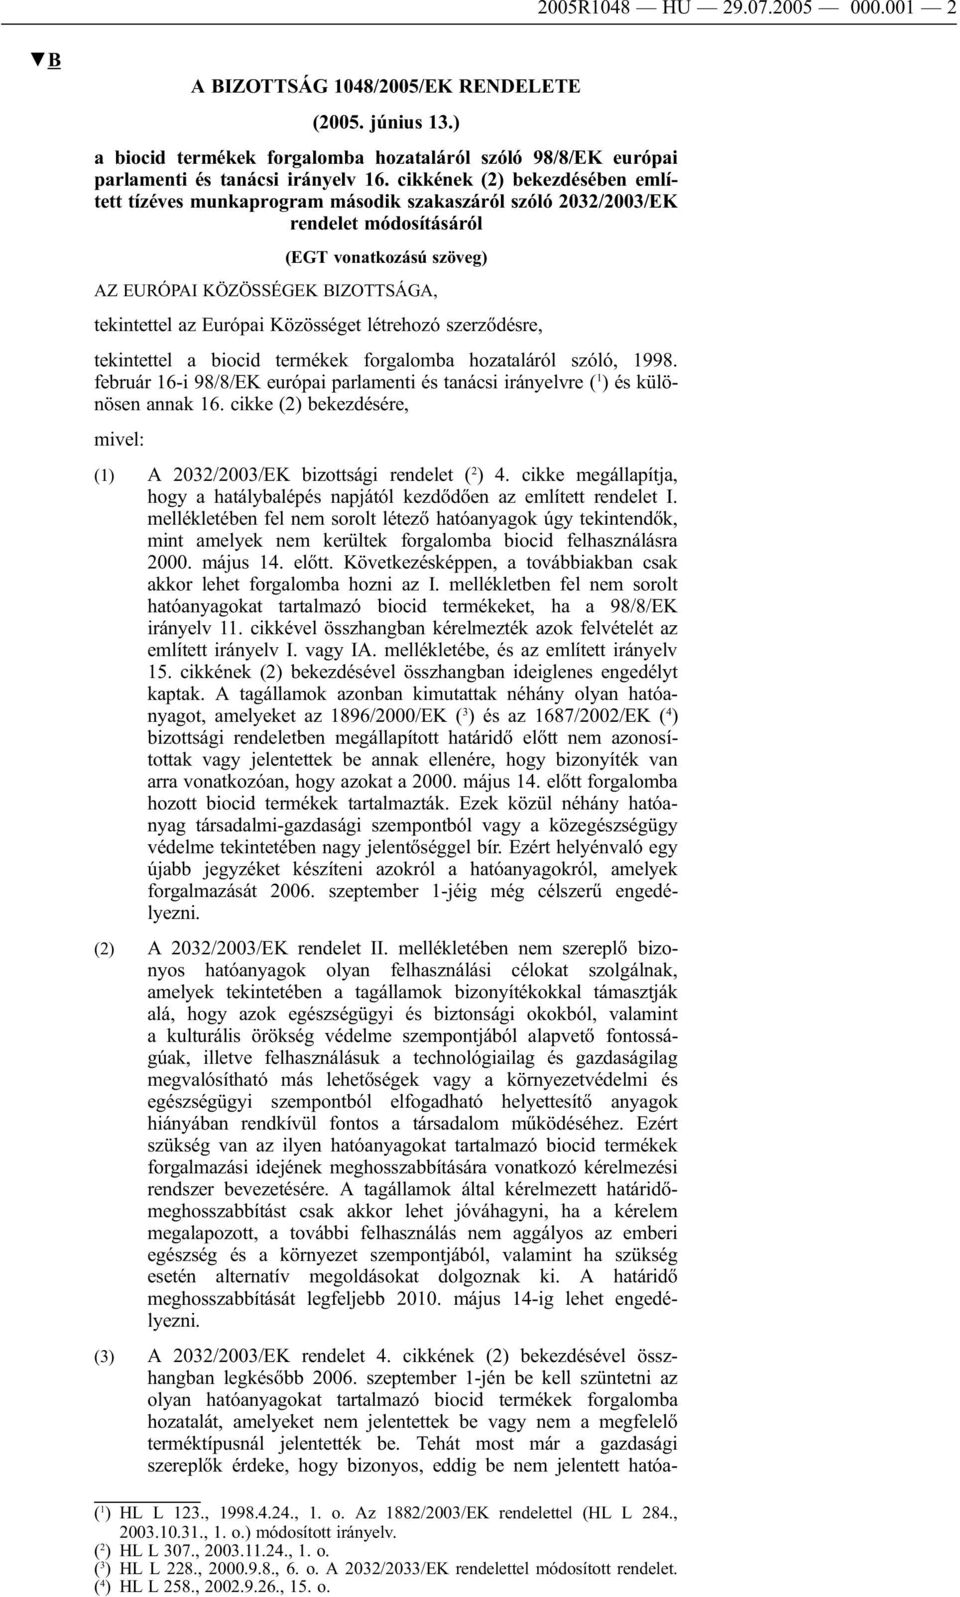 Közösséget létrehozó szerződésre, tekintettel a biocid termékek forgalomba hozataláról szóló, 1998. február 16-i 98/8/EK európai parlamenti és tanácsi irányelvre ( 1 ) és különösen annak 16.